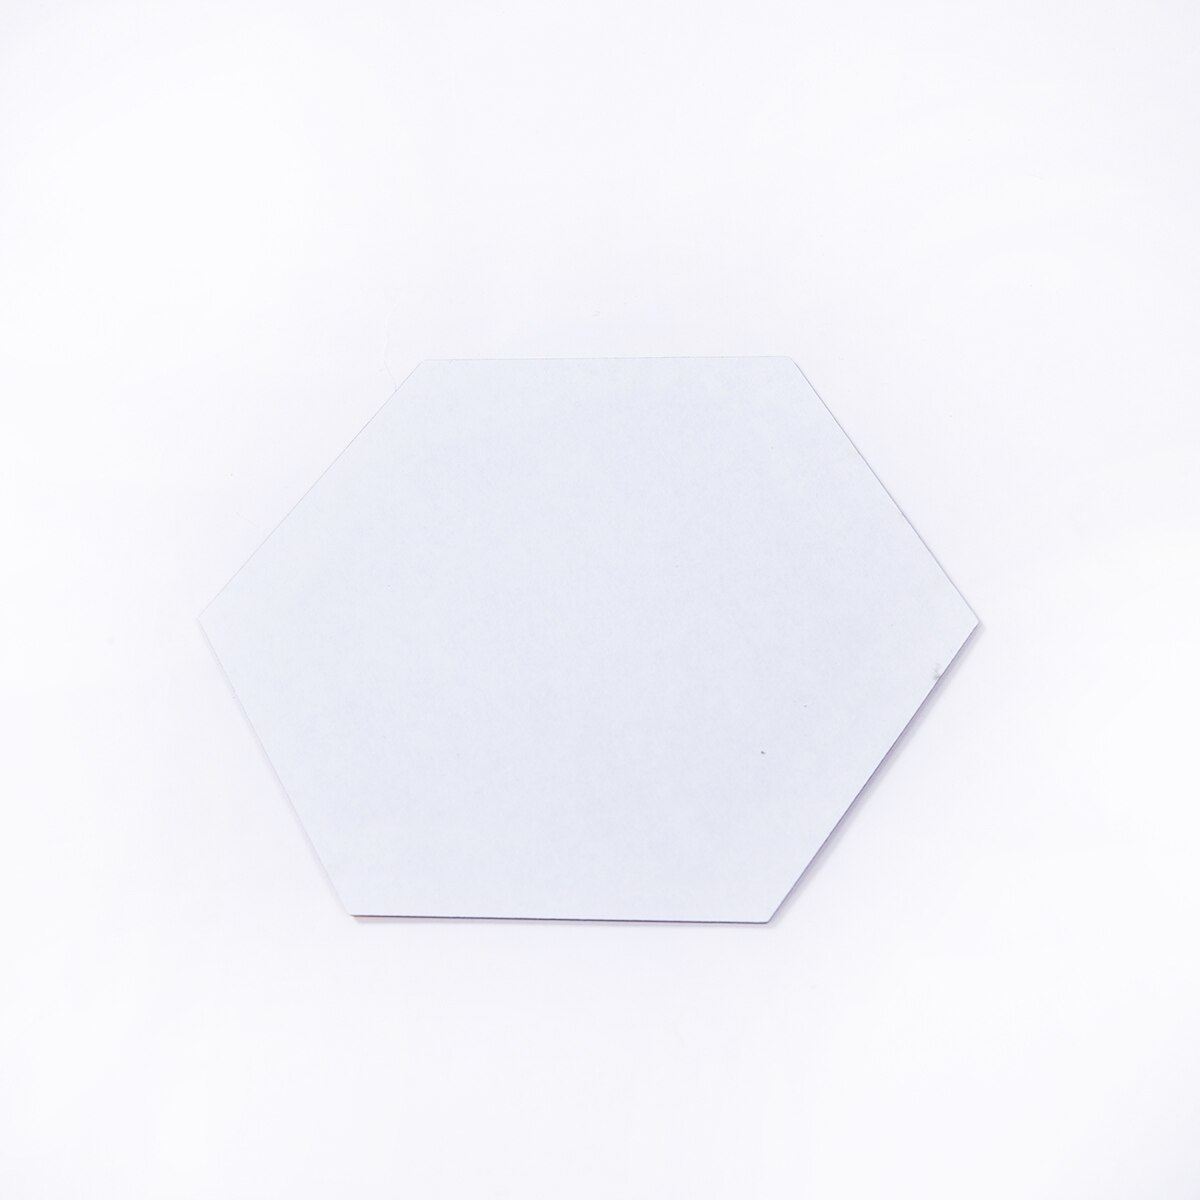 3D Mirror Hexagon Acrylic Removable Wall Sticker Decal Home Decor: Silver